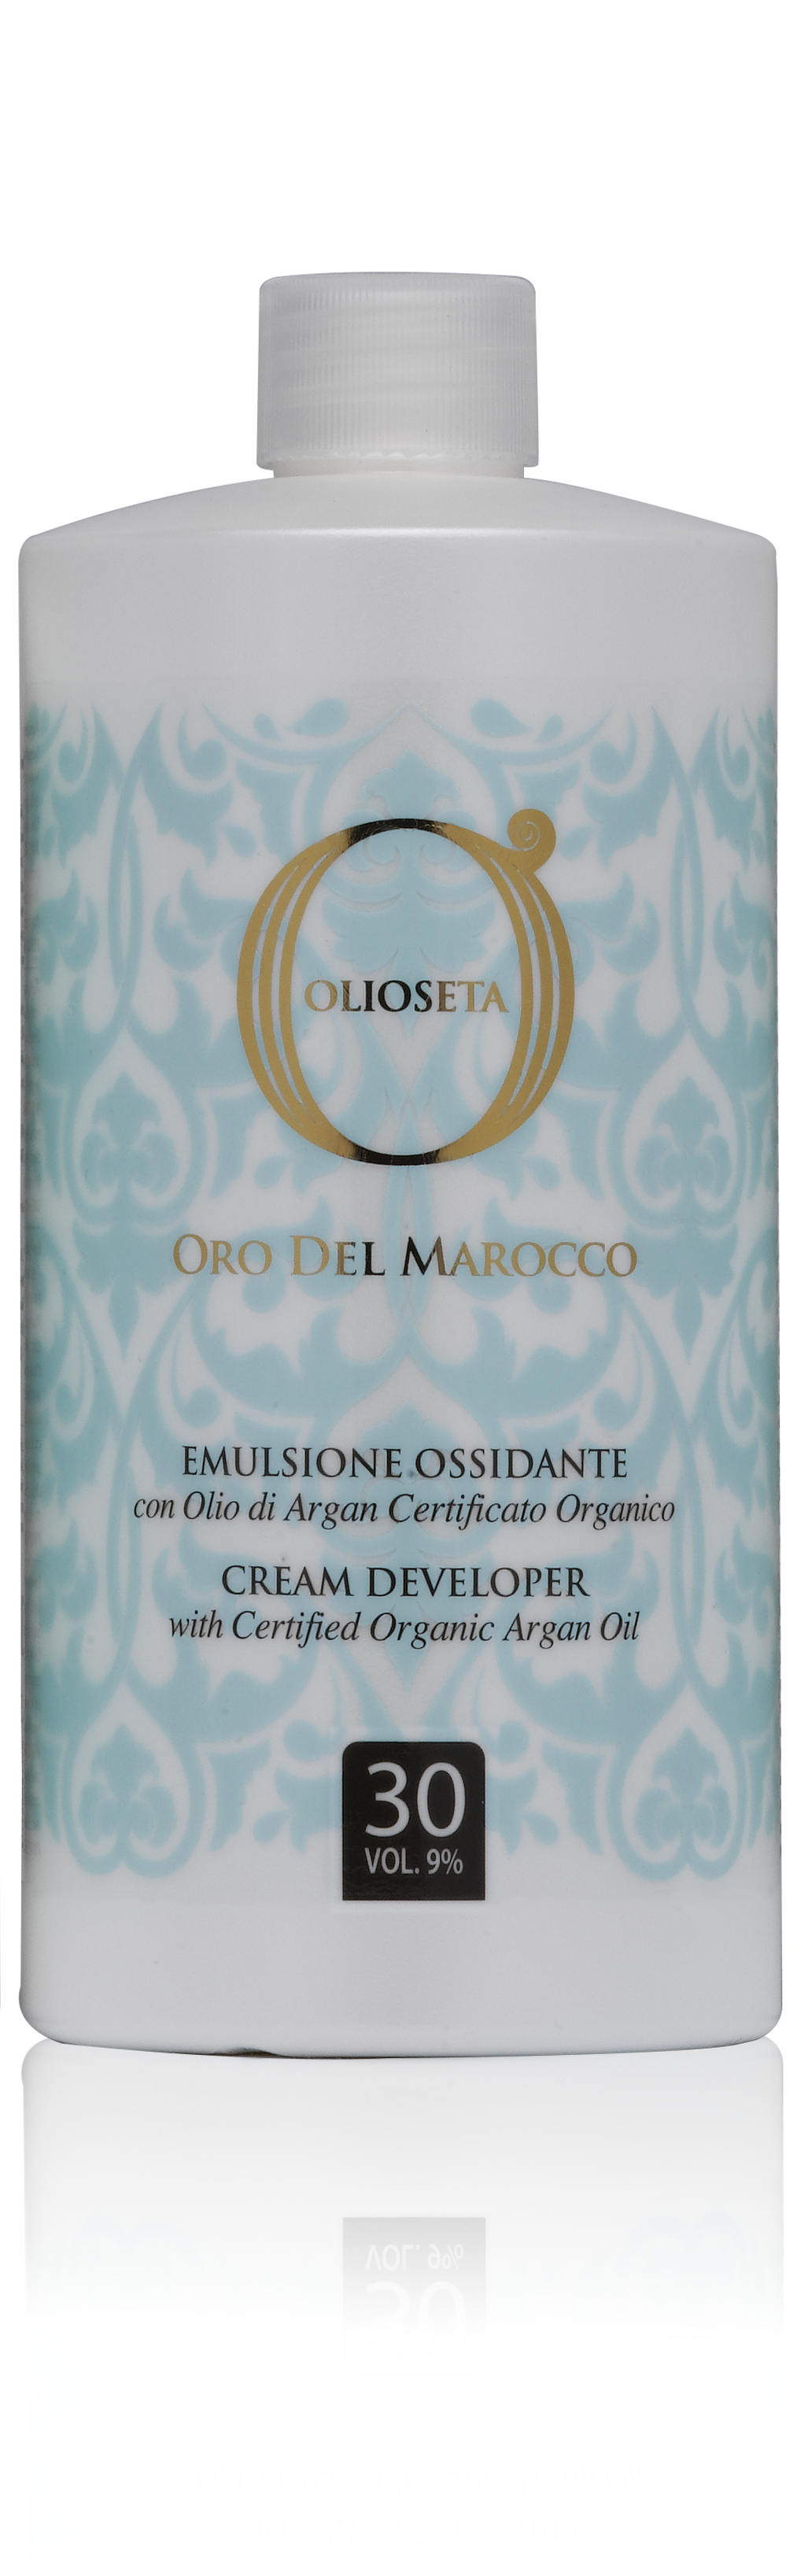 Barex olioseta oro del marocco эмульсионный оксигент с аргановым маслом 9% 750мл